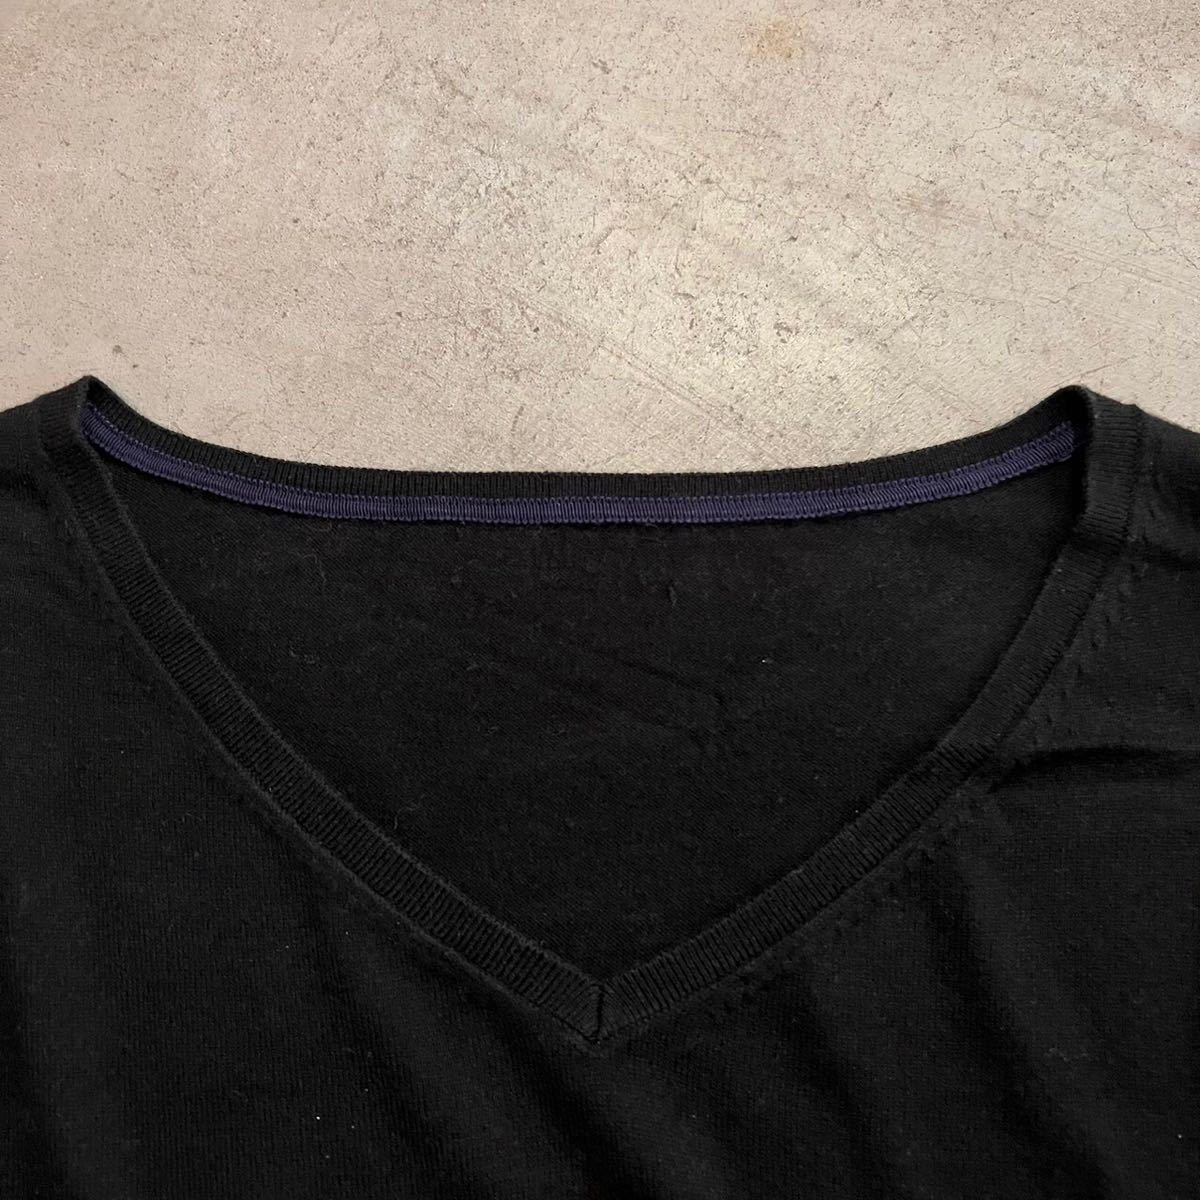  Old Gap OLD GAP Vintage 90s 00s шелк . вязаный V шея свитер S степени высокий мера чёрный черный мужской женский USA б/у одежда 